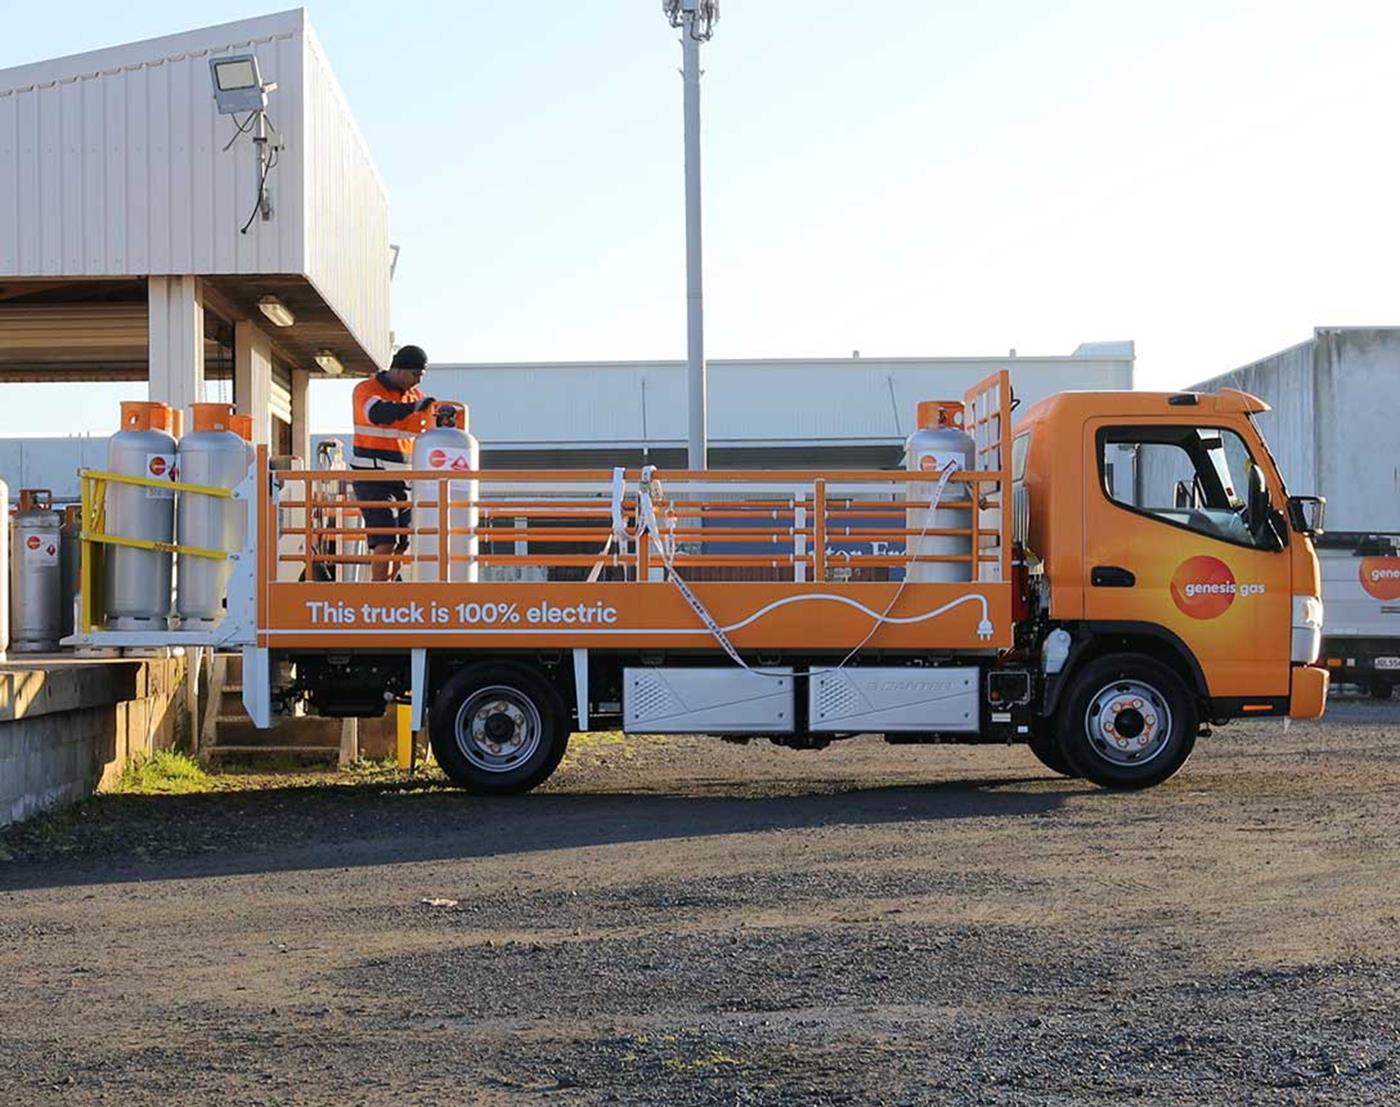 Genesis branded orange electric truck